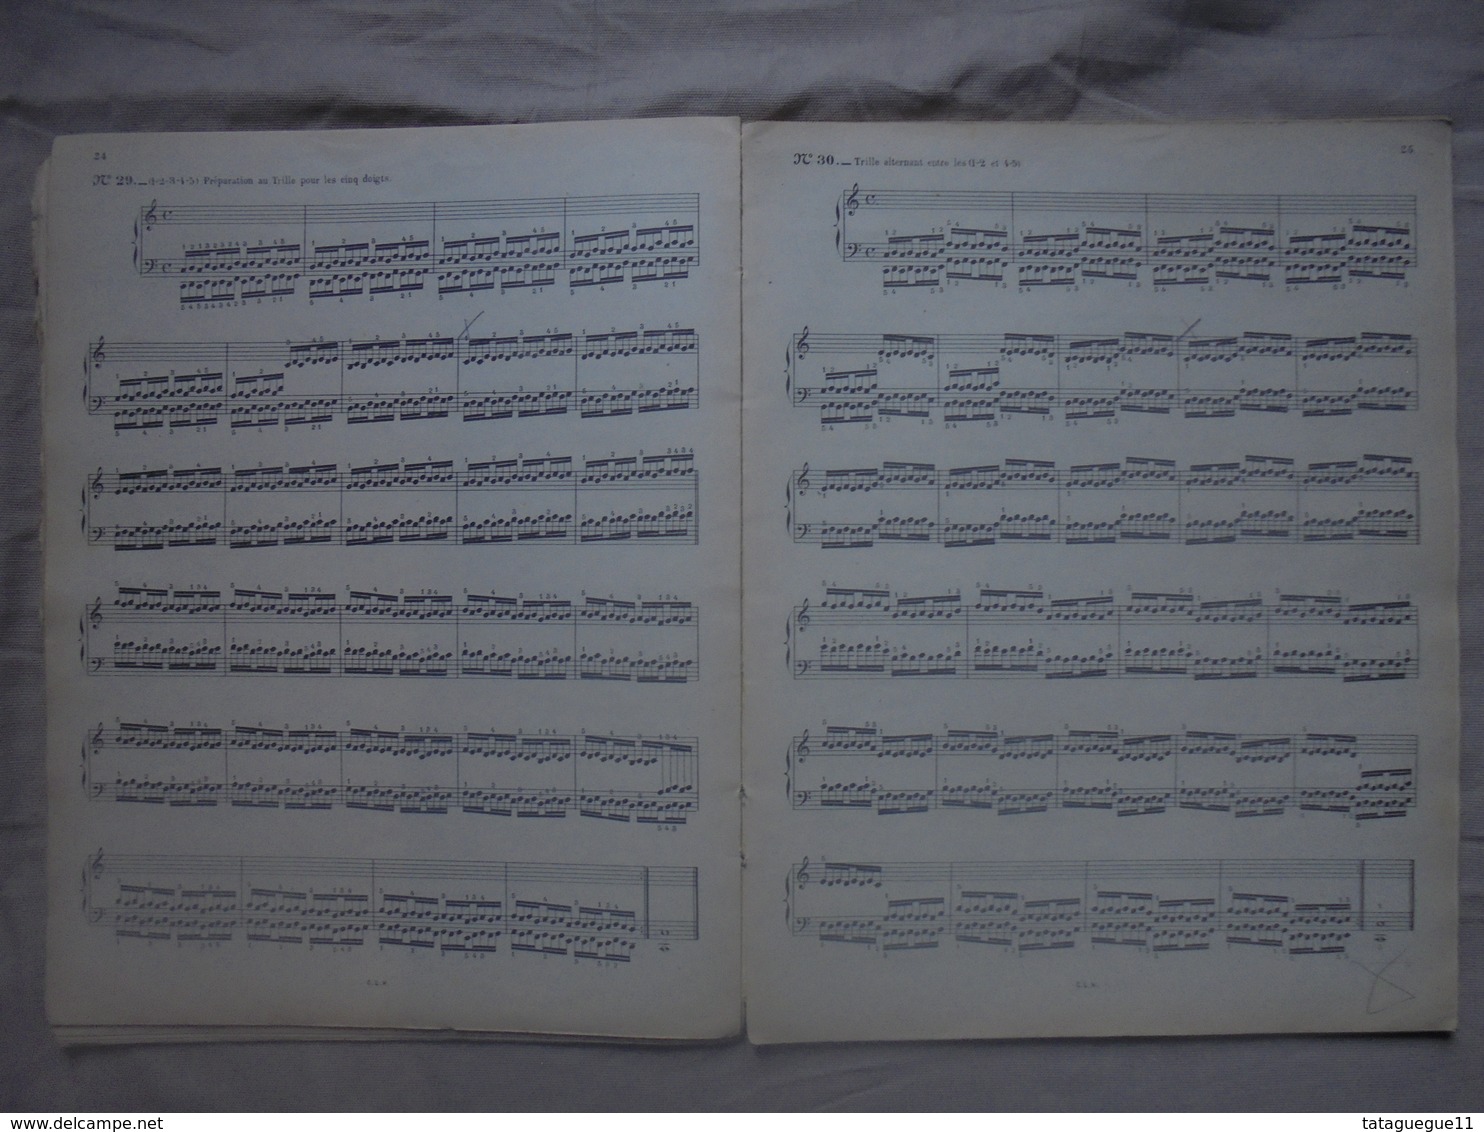 Ancien -  ​​​​​​​Livre De Partitions Le Pianiste Virtuose En 60 éxcercices Par C.L. HANON Copyright 1923 - Instrumento Di Tecla